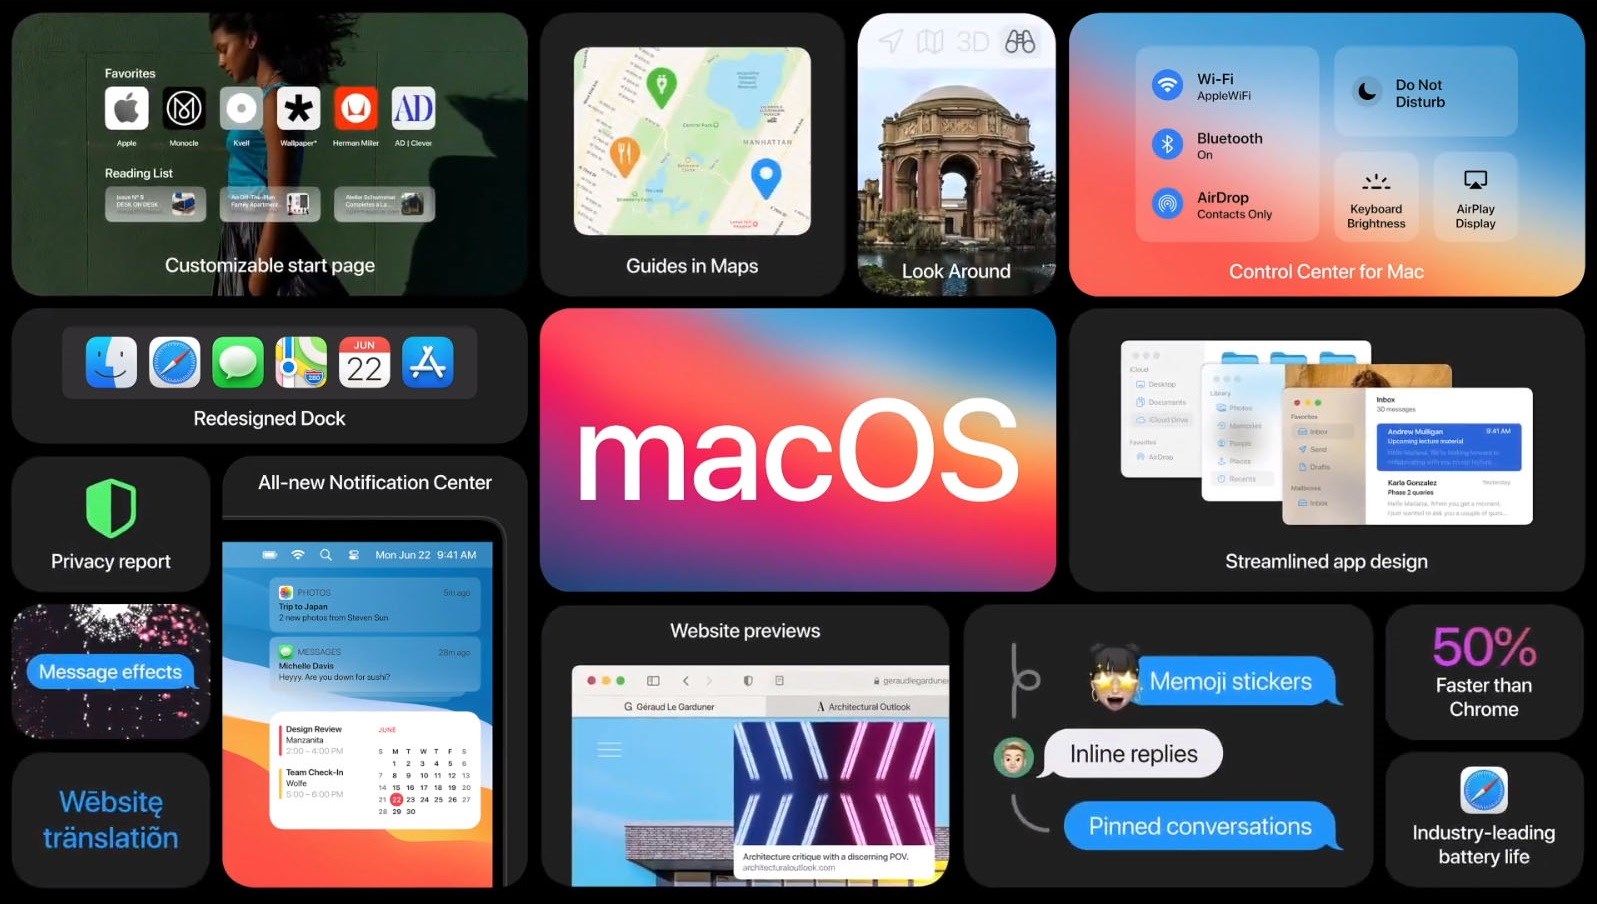 Az bilinen 10 macOS Big Sur özelliği